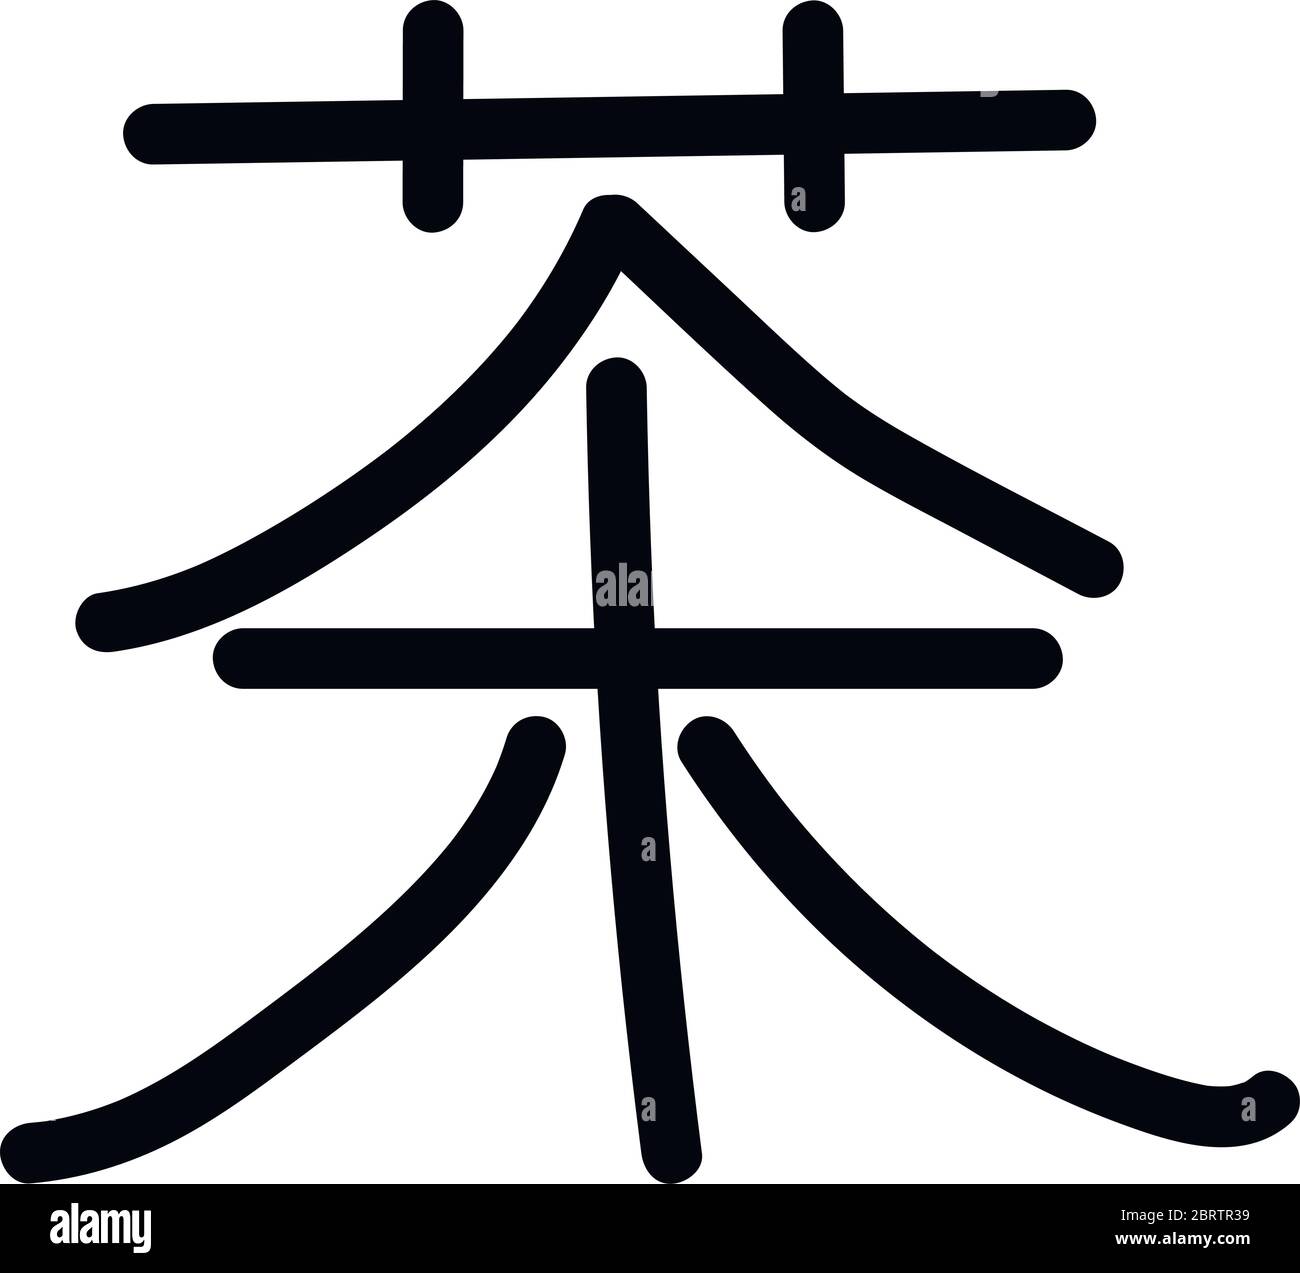 Chinesische Zeichen mit der Bedeutung Tee, Vektor-Illustration Stock Vektor